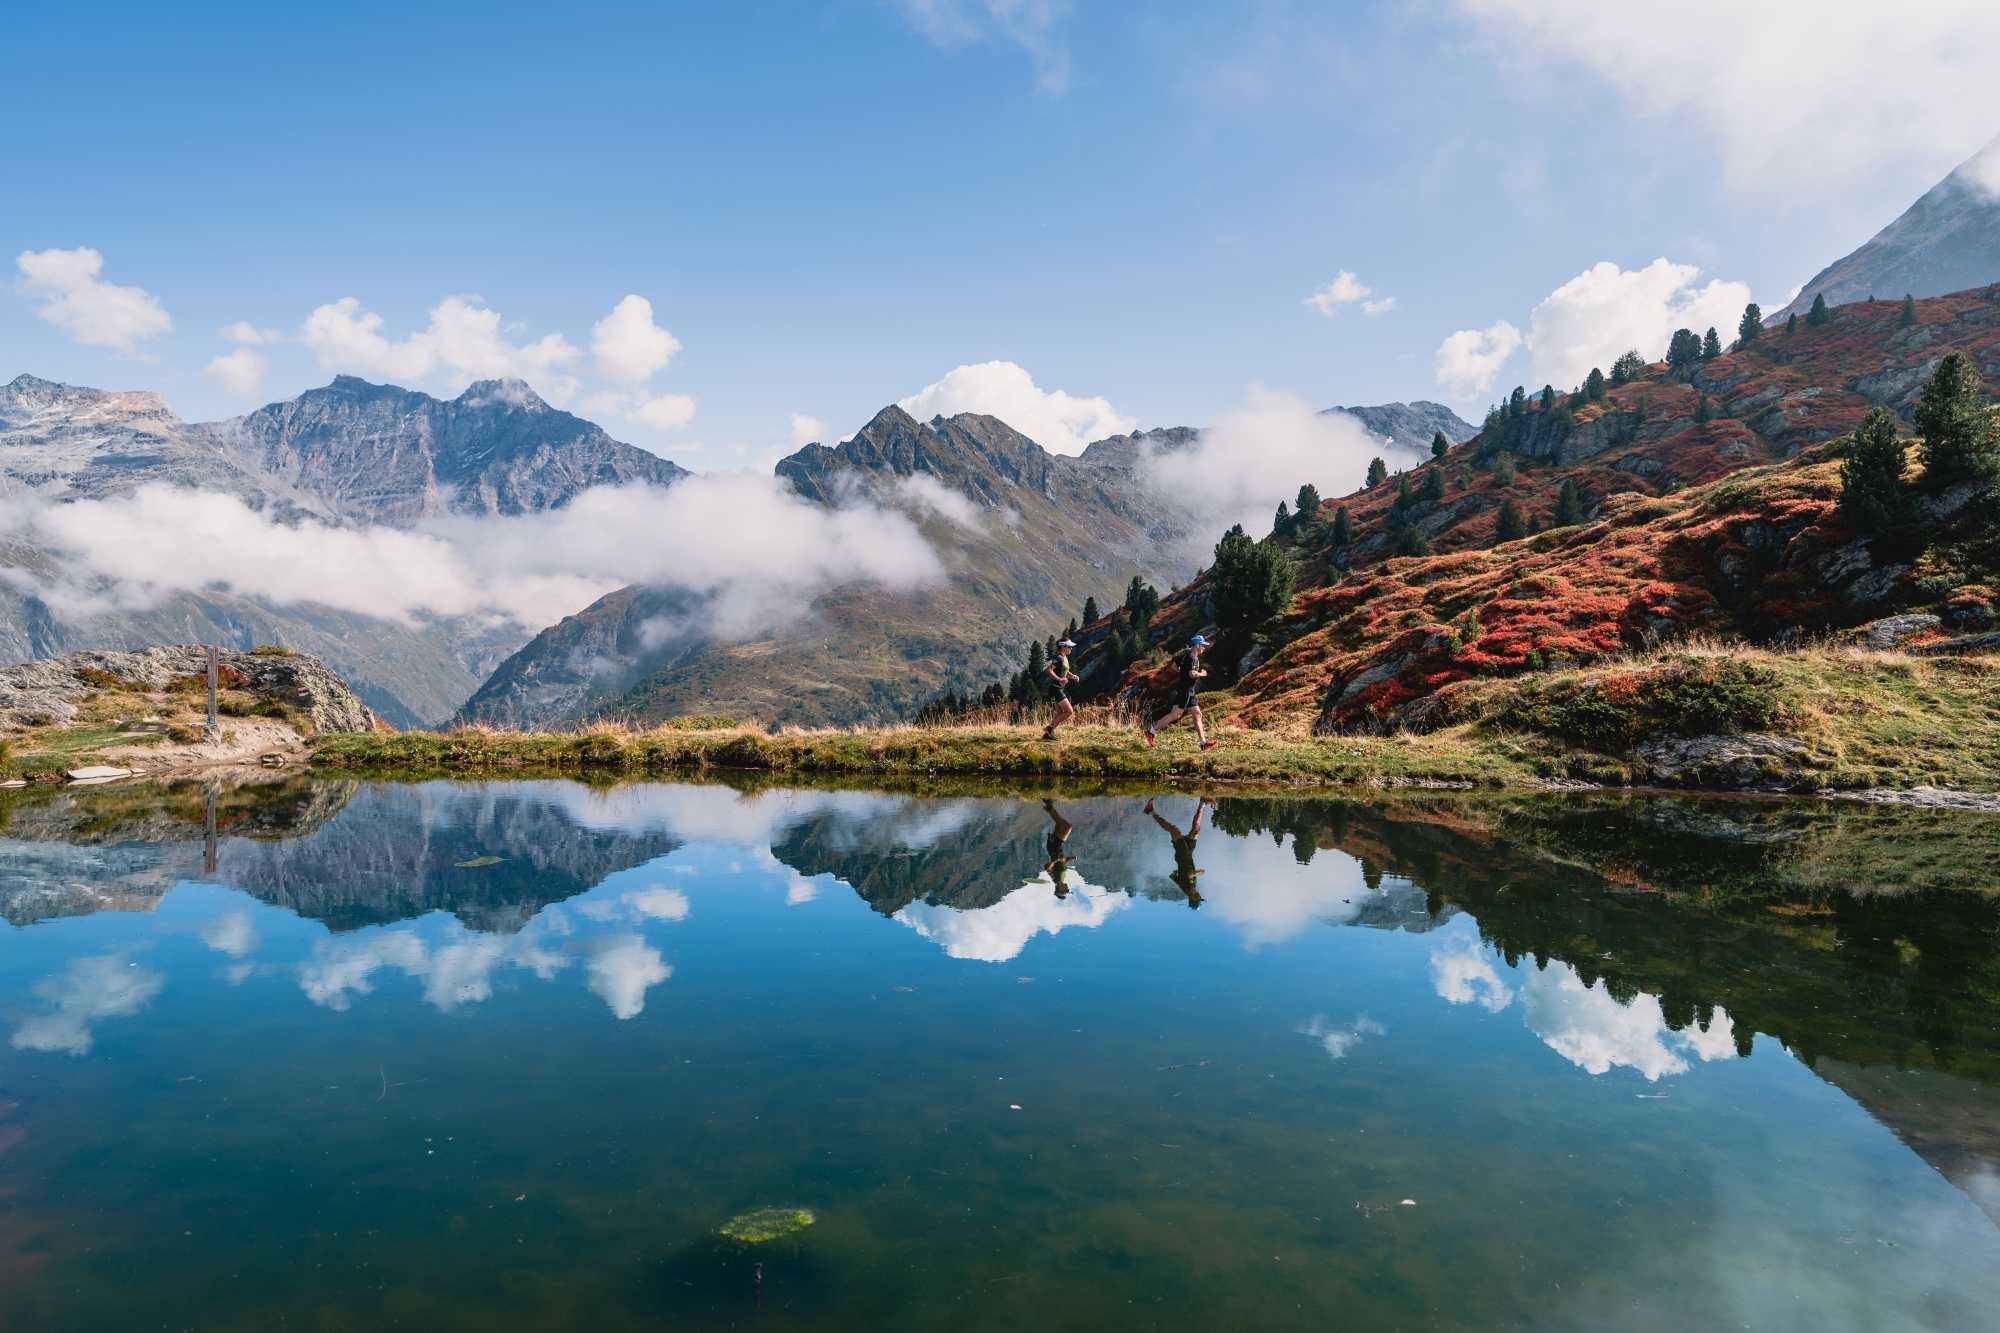 Au-delà de l'aspect performance, les randonneurs participent souvent à des trails pour découvrir de magnifiques paysages et accéder aux plus beaux coins du Valais.